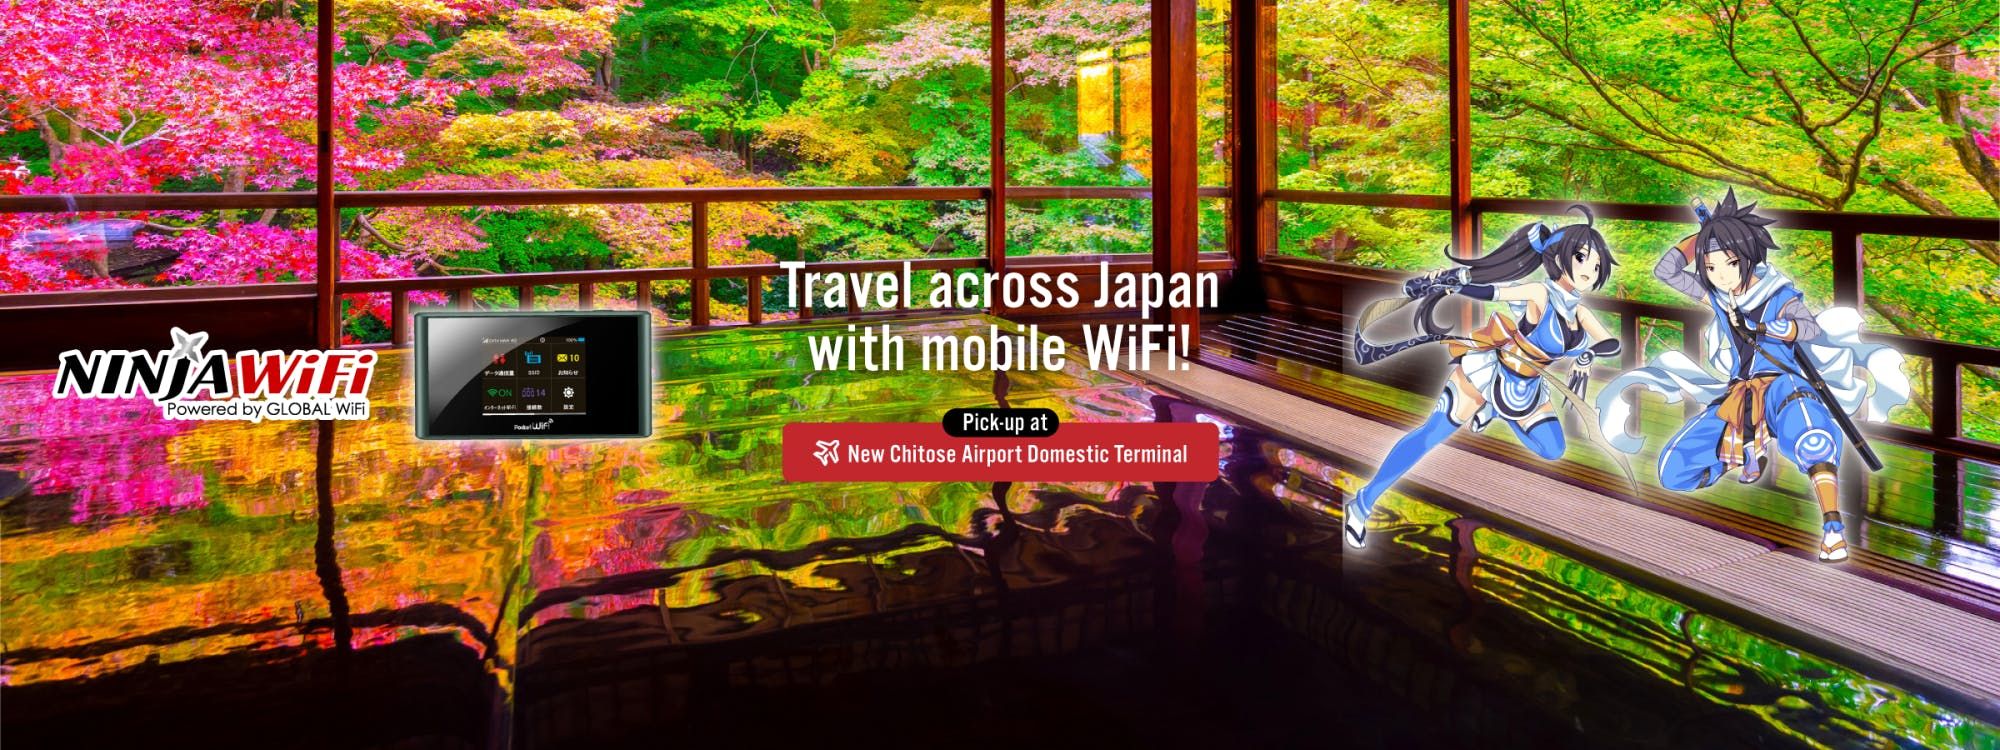 Imagen del tour: Alquiler de WiFi móvil - Nueva terminal nacional del aeropuerto de Chitose